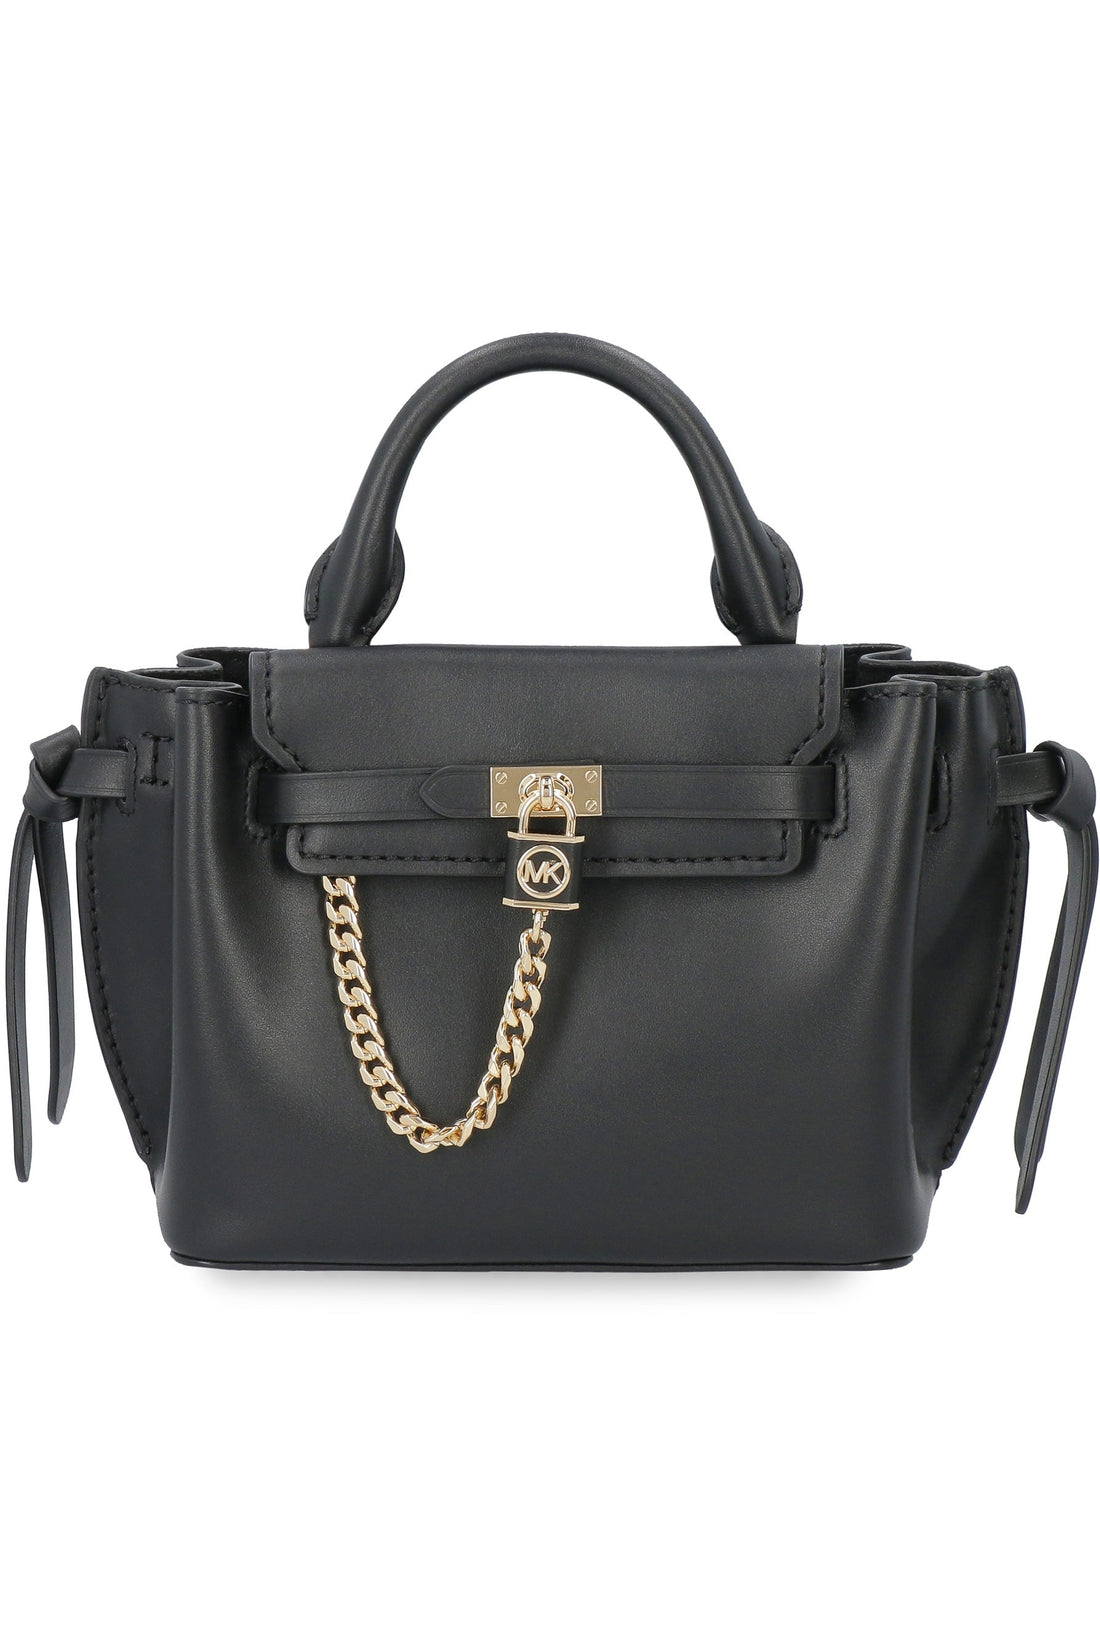 MICHAEL MICHAEL KORS-OUTLET-SALE-Hamilton Legacy small leather handbag-ARCHIVIST